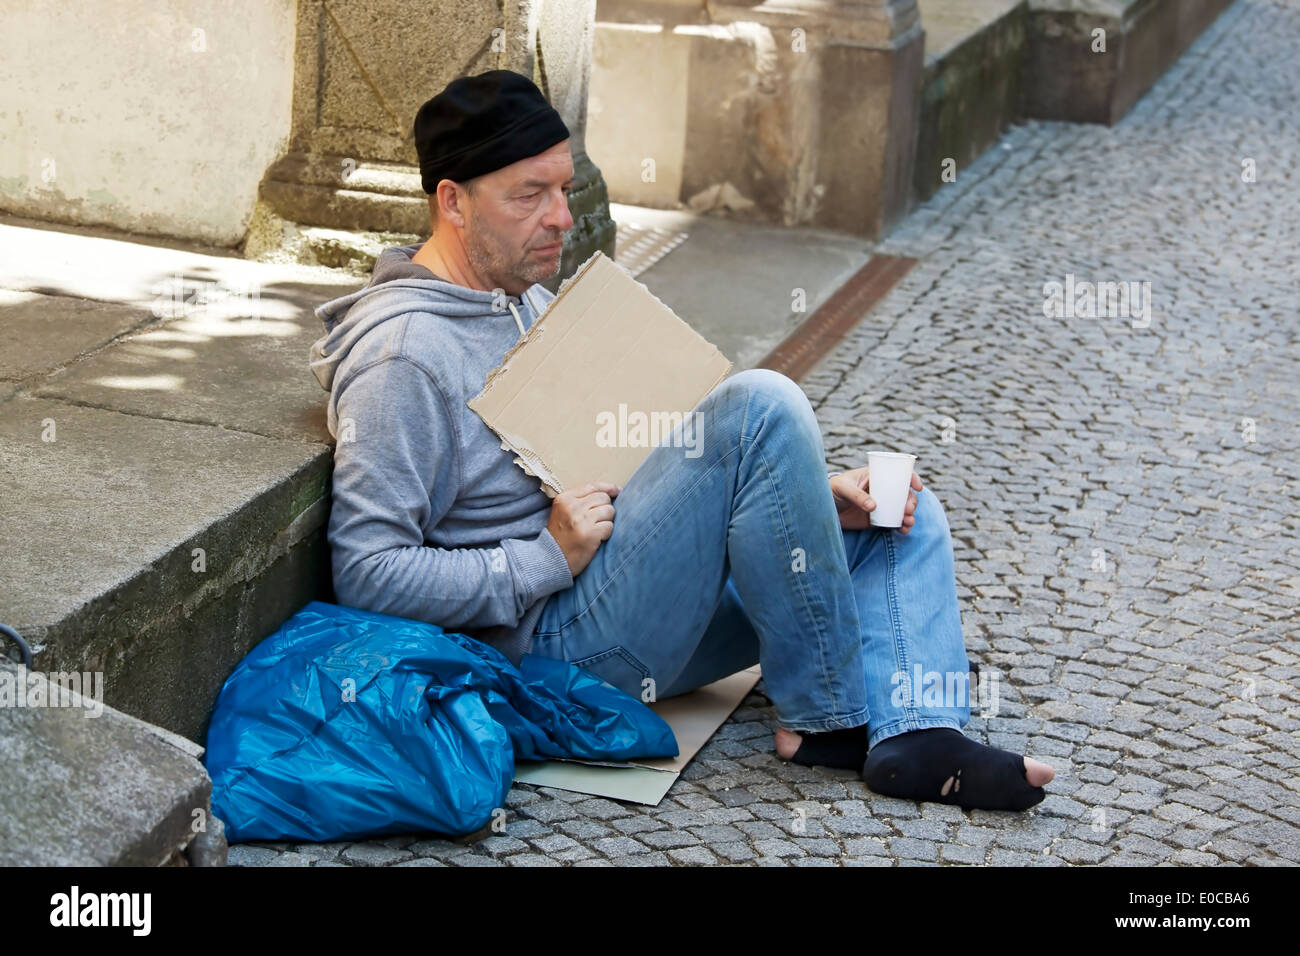 Un mendicante di disoccupati è senzatetto e ha fame, Ein arbeitsloser Bettler ist Obdachlos und hat fame Foto Stock